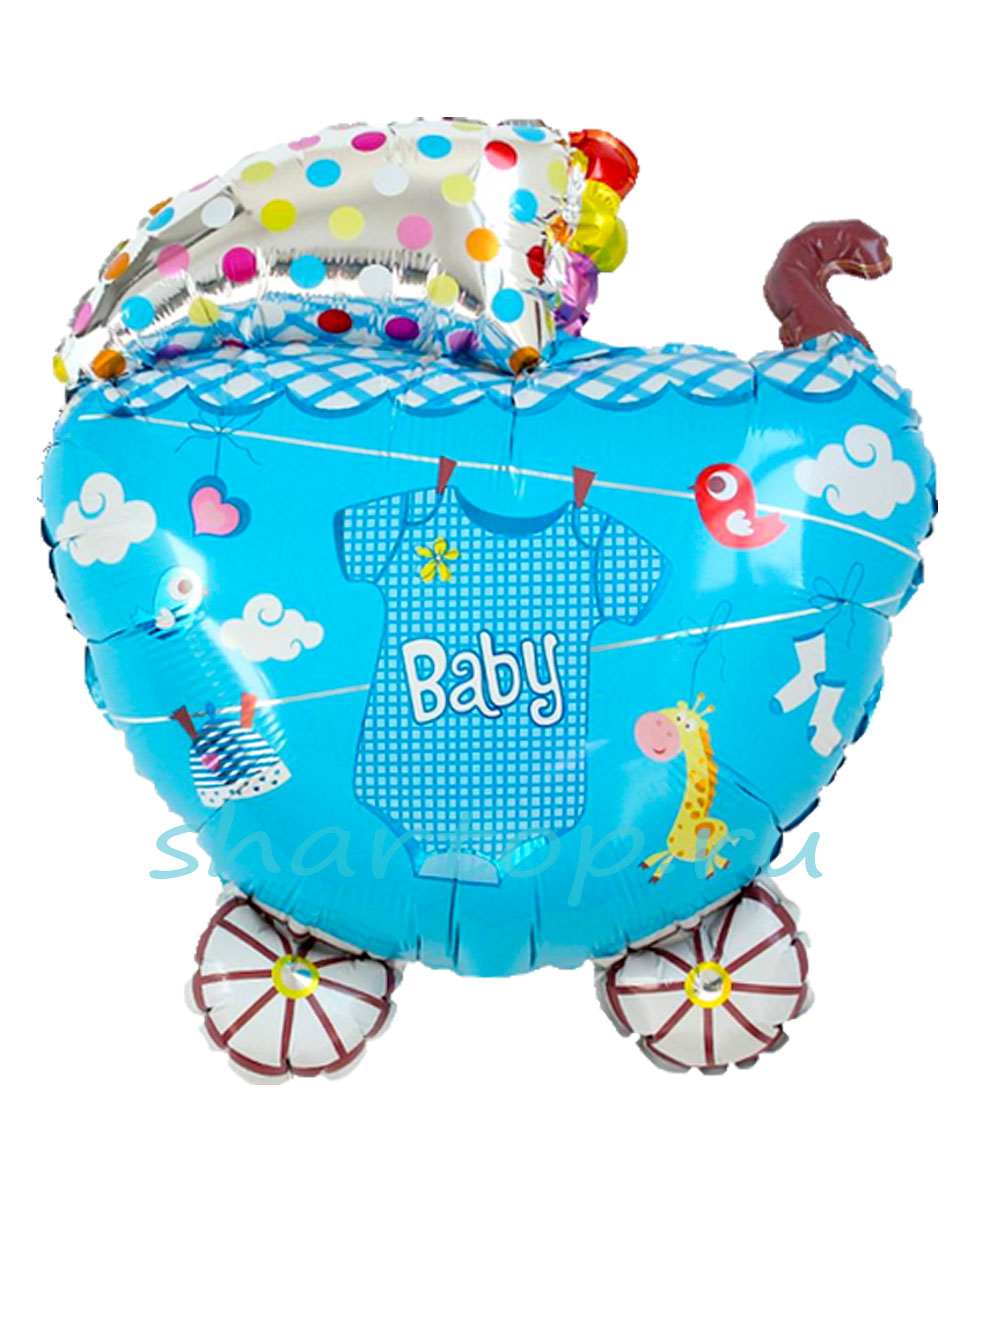 Фольгированный воздушный шар в форме маленькой детской коляски для мальчика. Размер 61 см. Наполнен гелием. Подвязан на ленте 120 см.